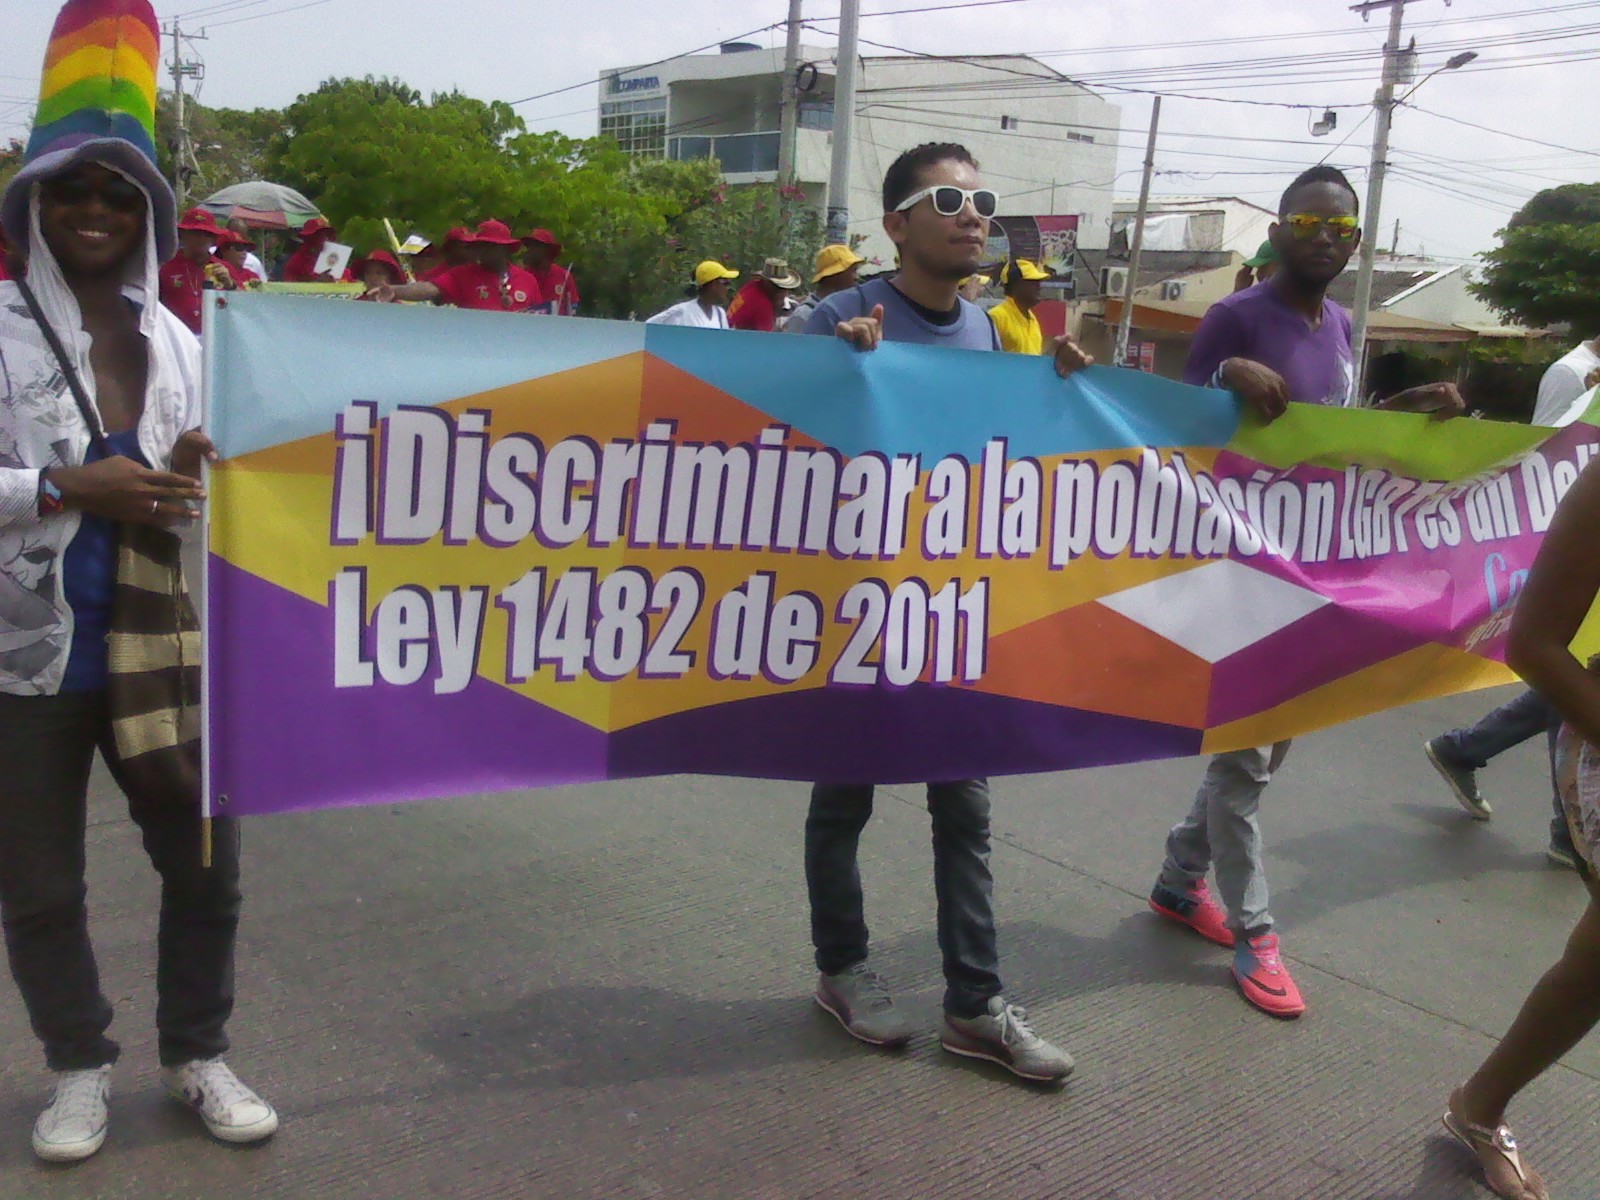 Día del trabajo, foto #3: ¡Discriminar a la población LGBT es un delito! Ley 1482 de 2011.